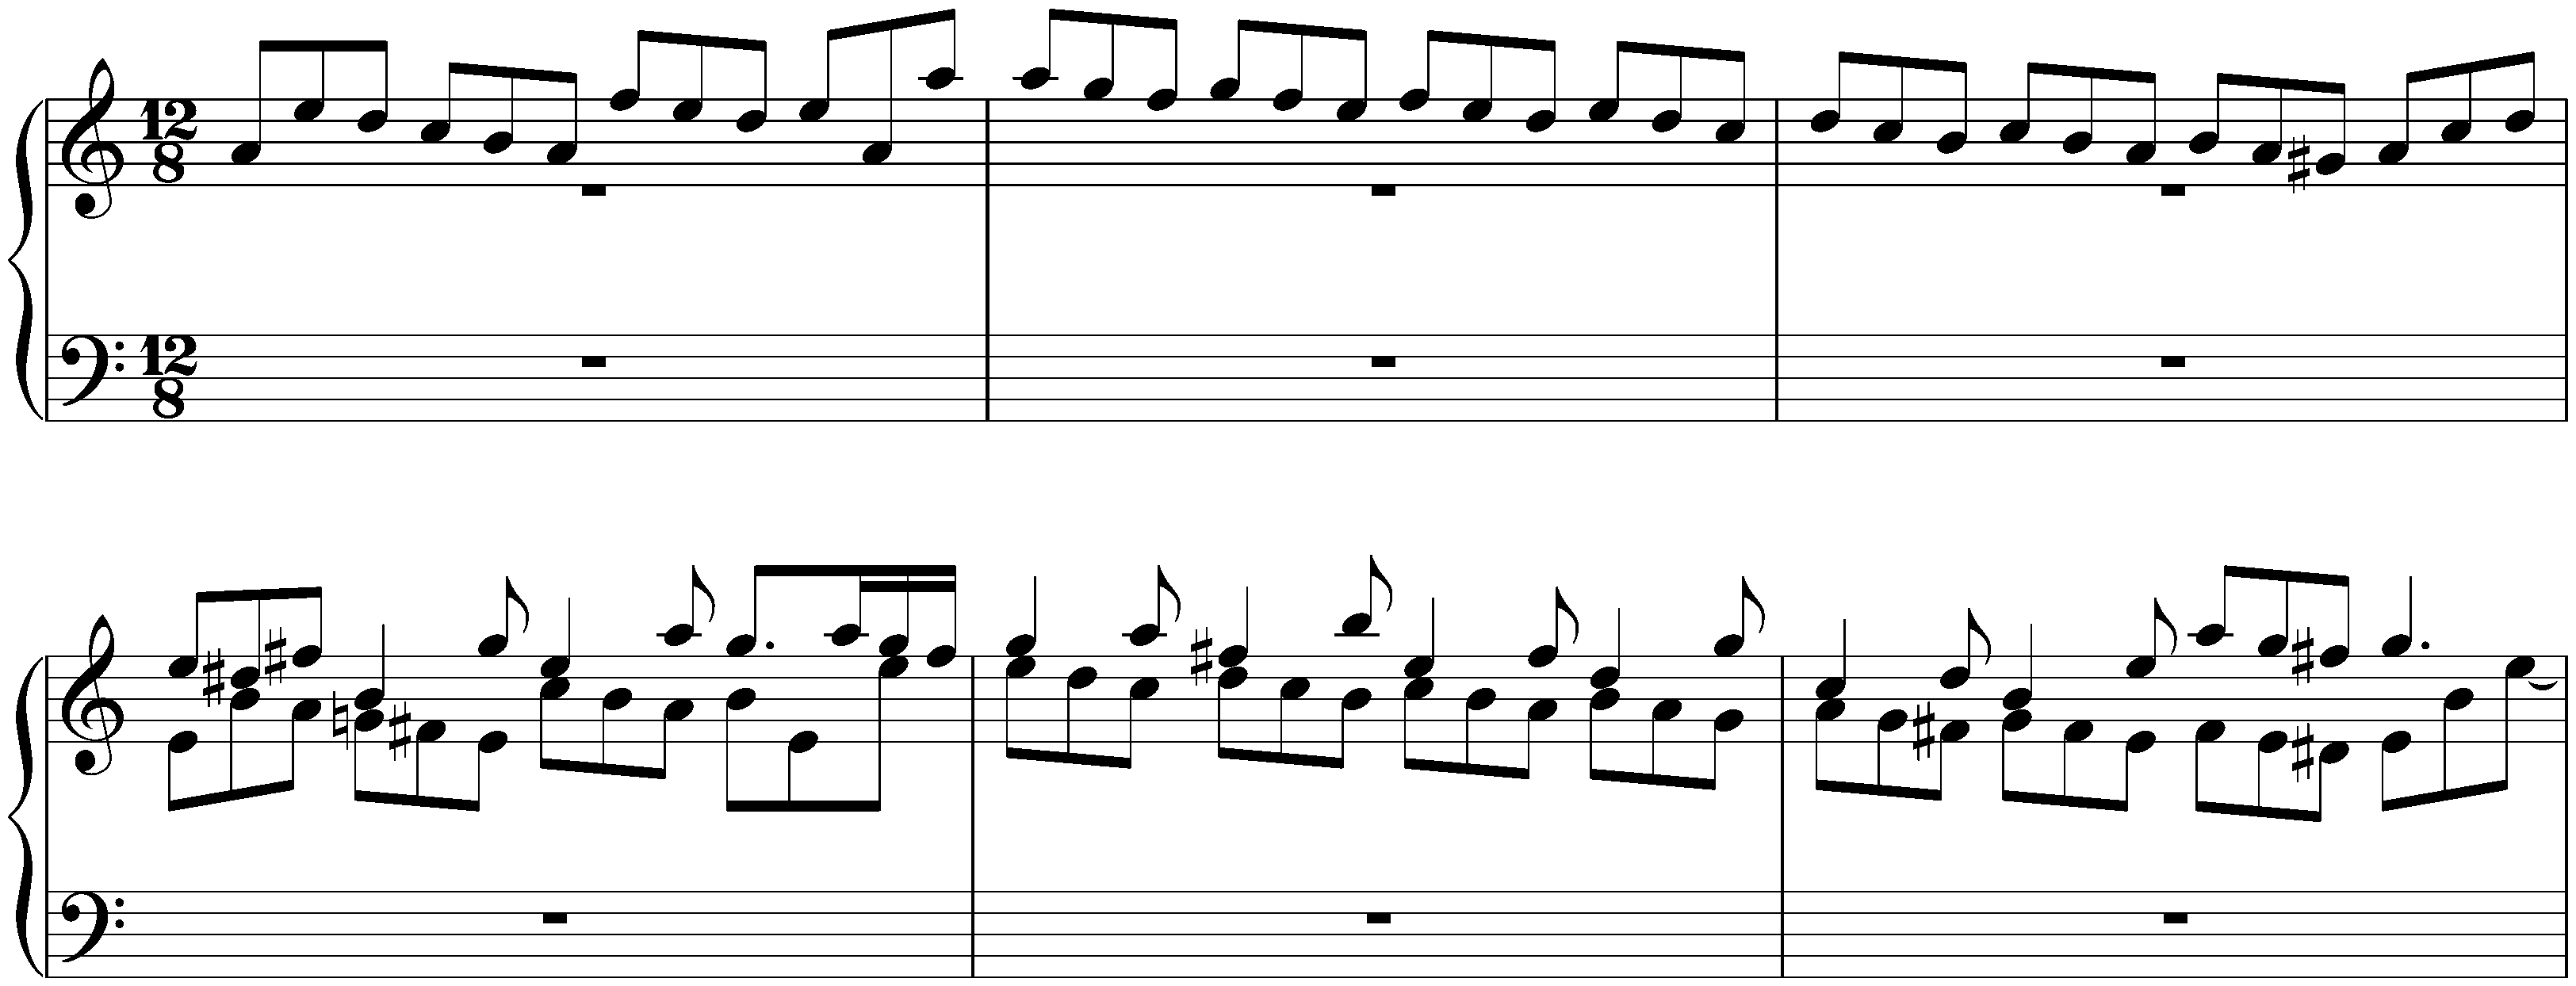 Sonata in A minor after Johann Adam Reincken, BWV 965; 7. Gigue